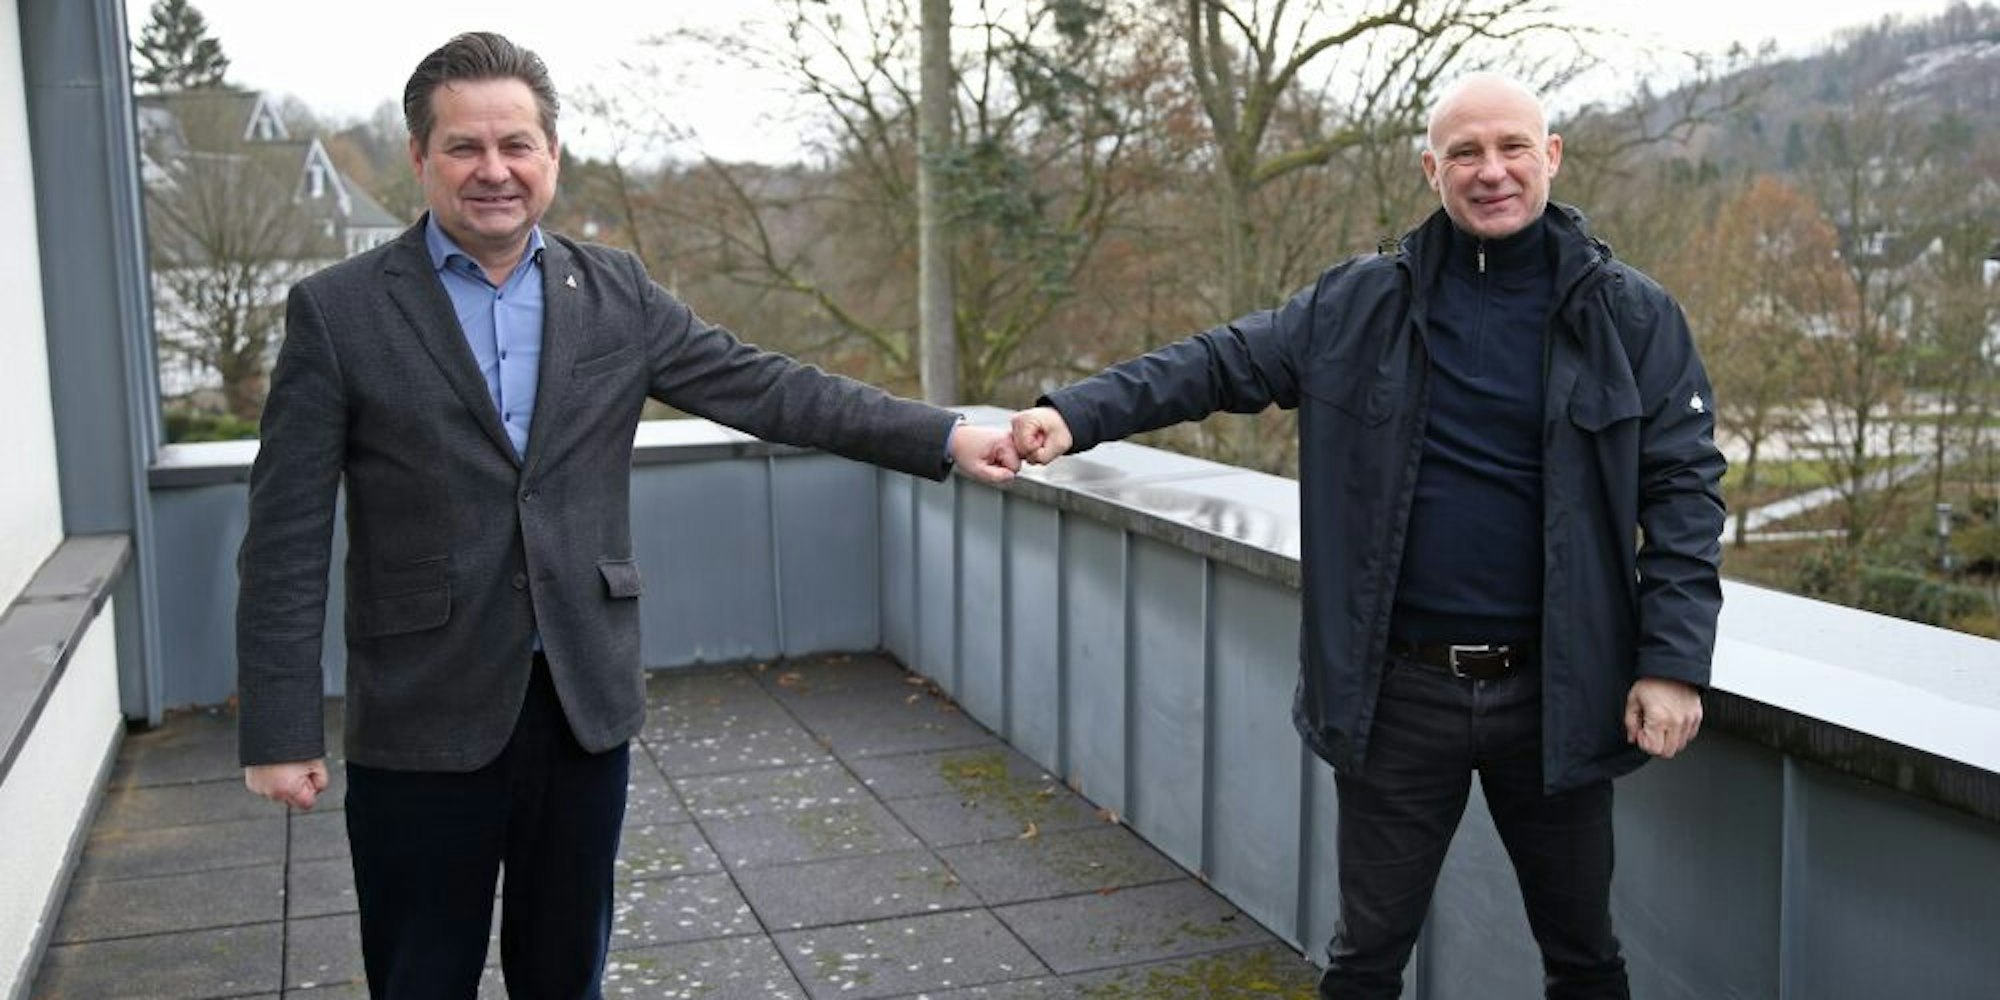 Auf dem Balkon des Bürgermeisterbüros trafen sich Ulrich Stücker (l.) und Andreas Harnisch zum Tippduell.